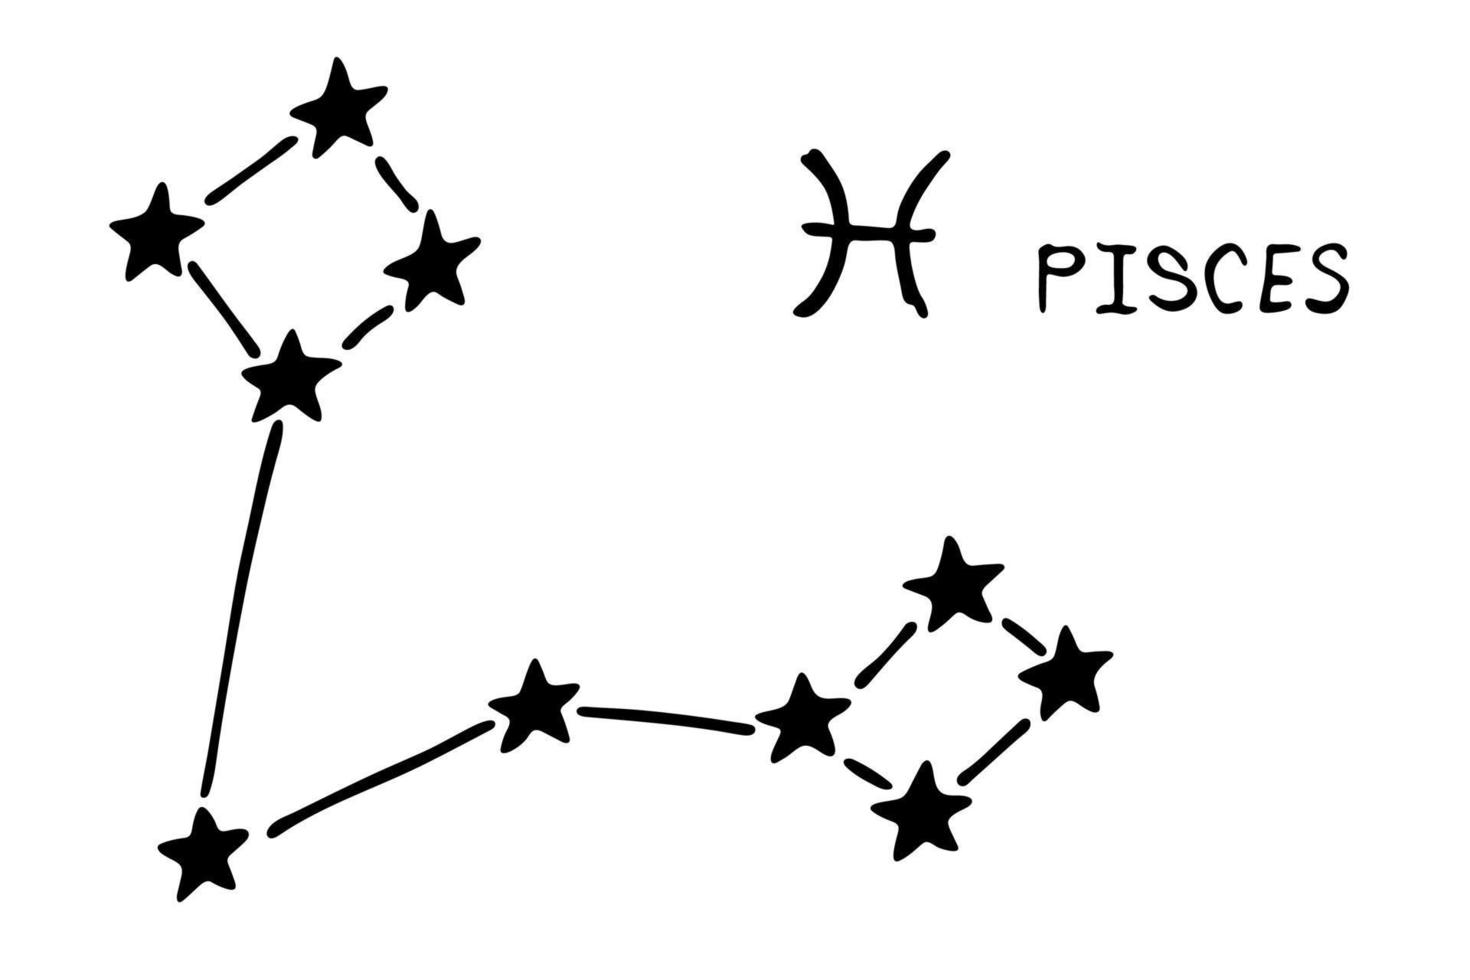 dibujado a mano piscis signo del zodiaco símbolo esotérico garabato astrología elemento de imágenes prediseñadas para el diseño vector